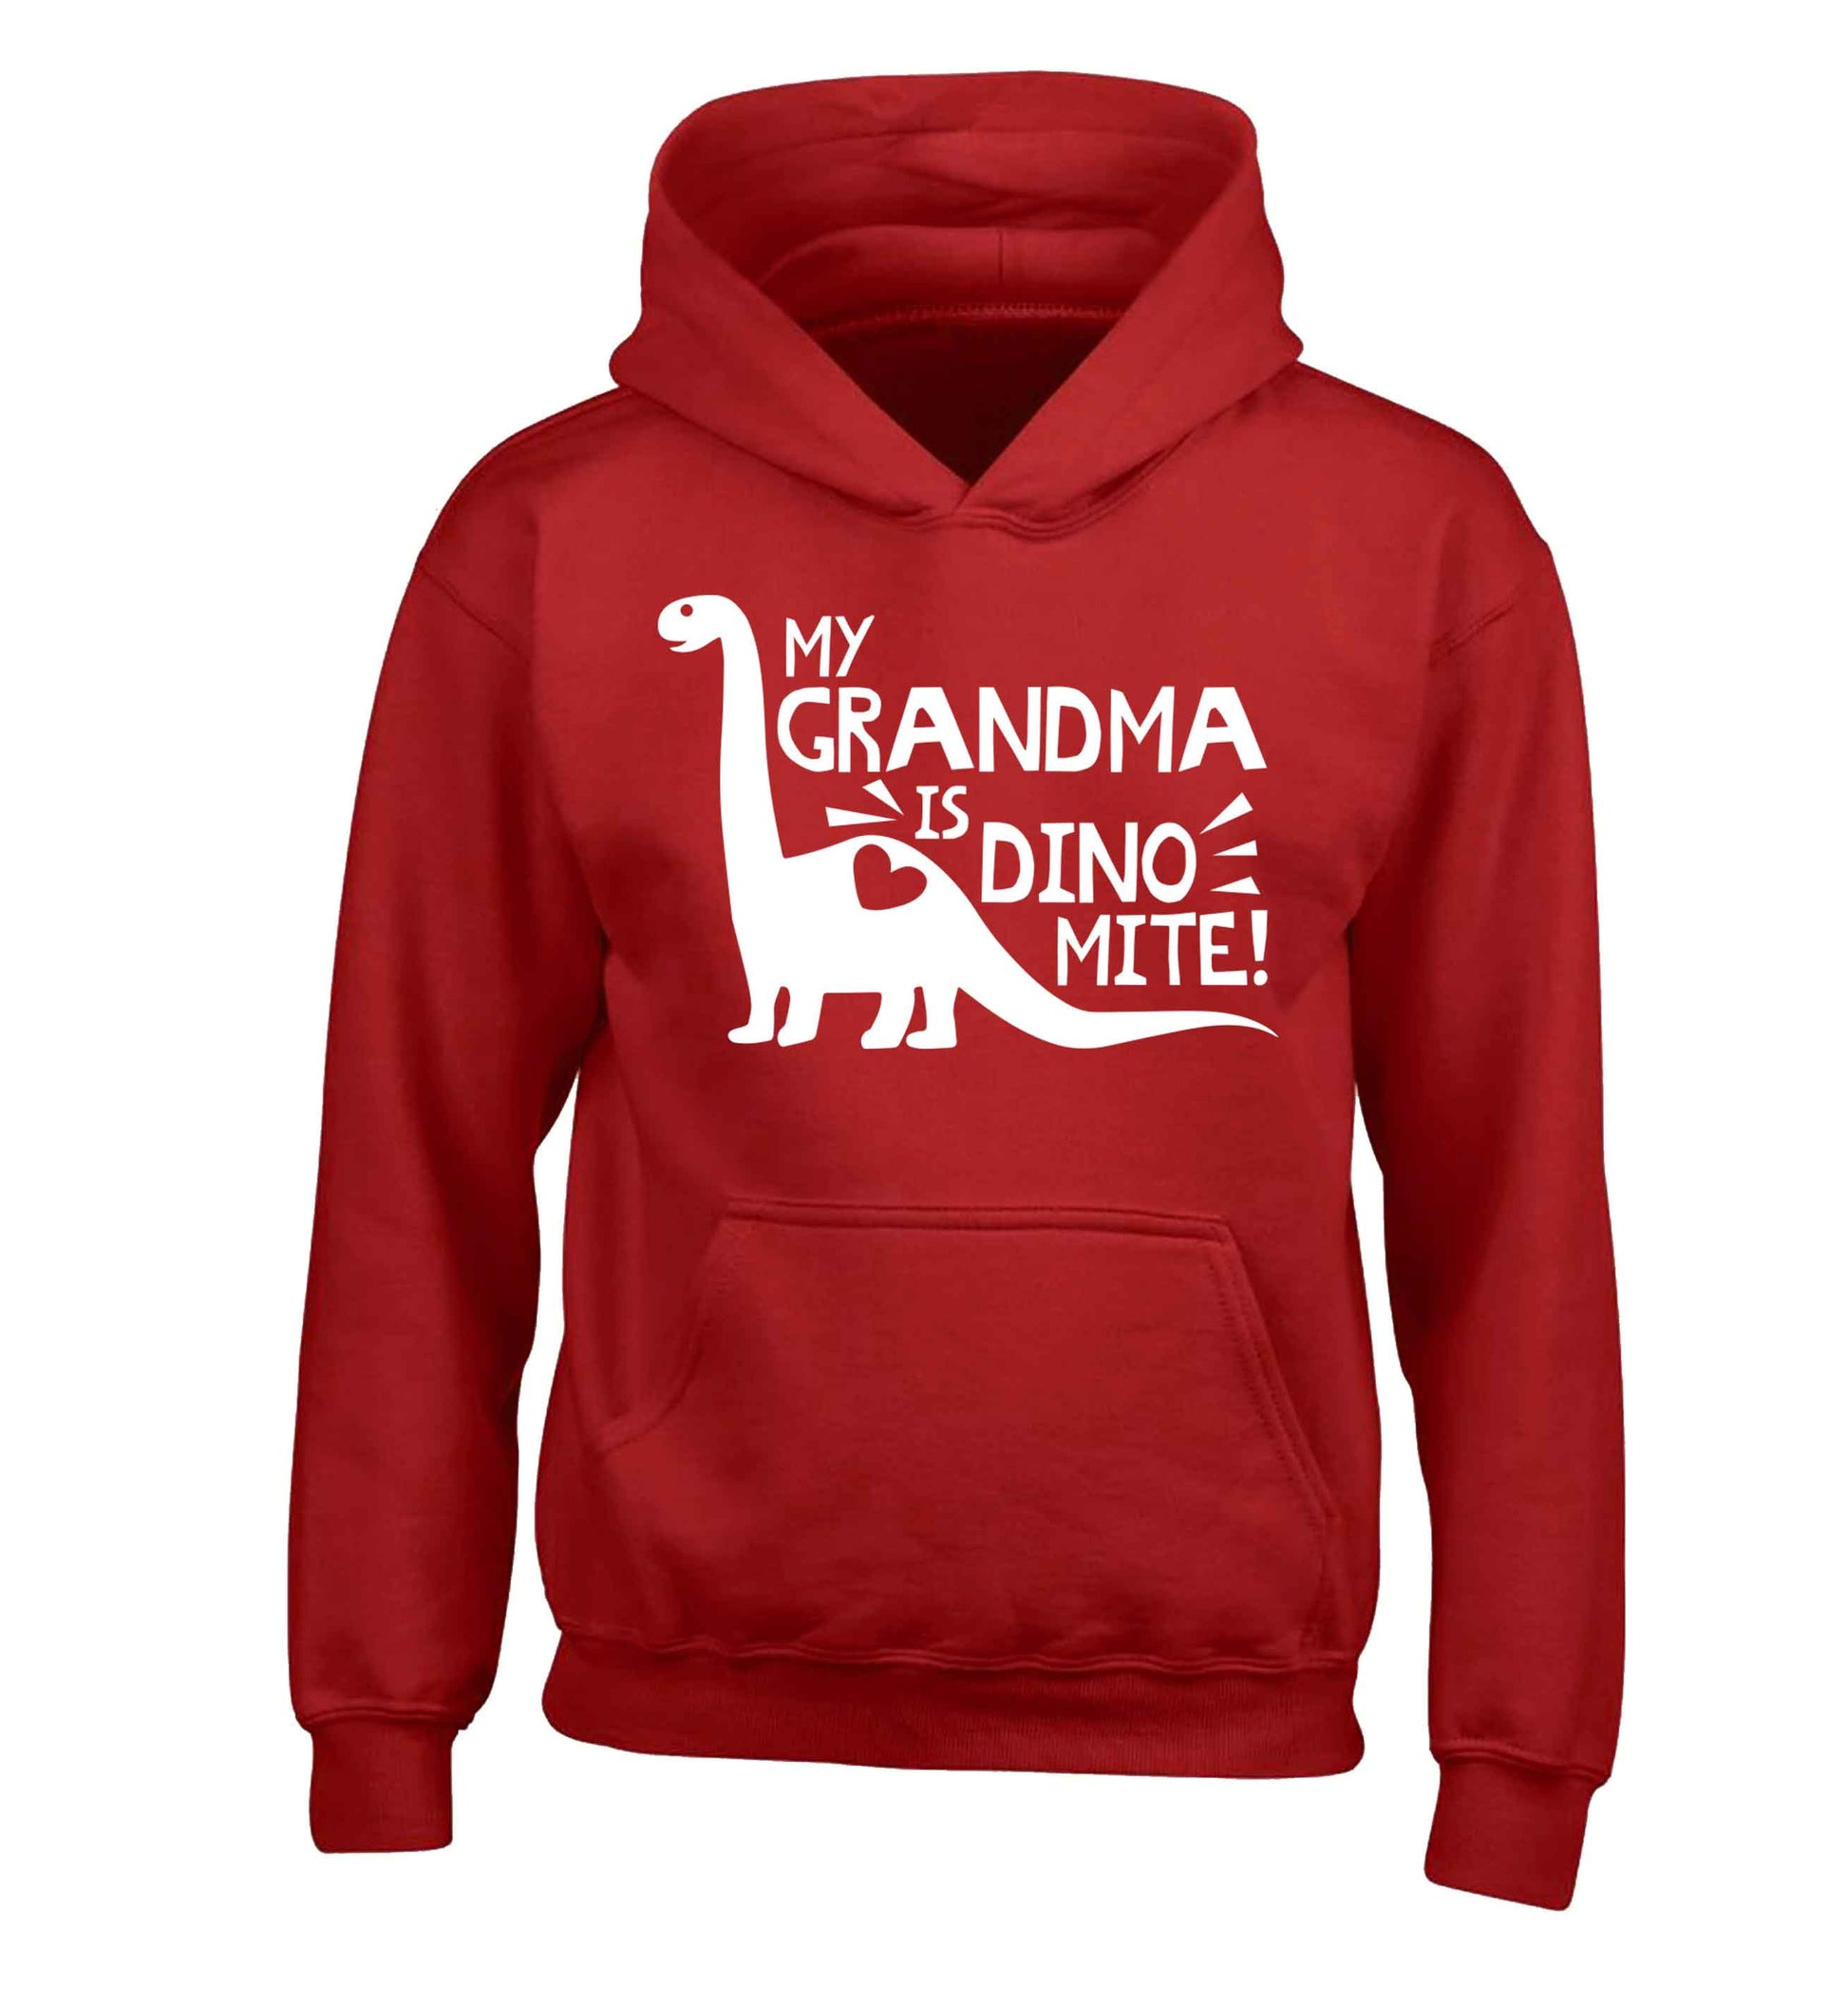 My grandma is dinomite! children's red hoodie 12-13 Years